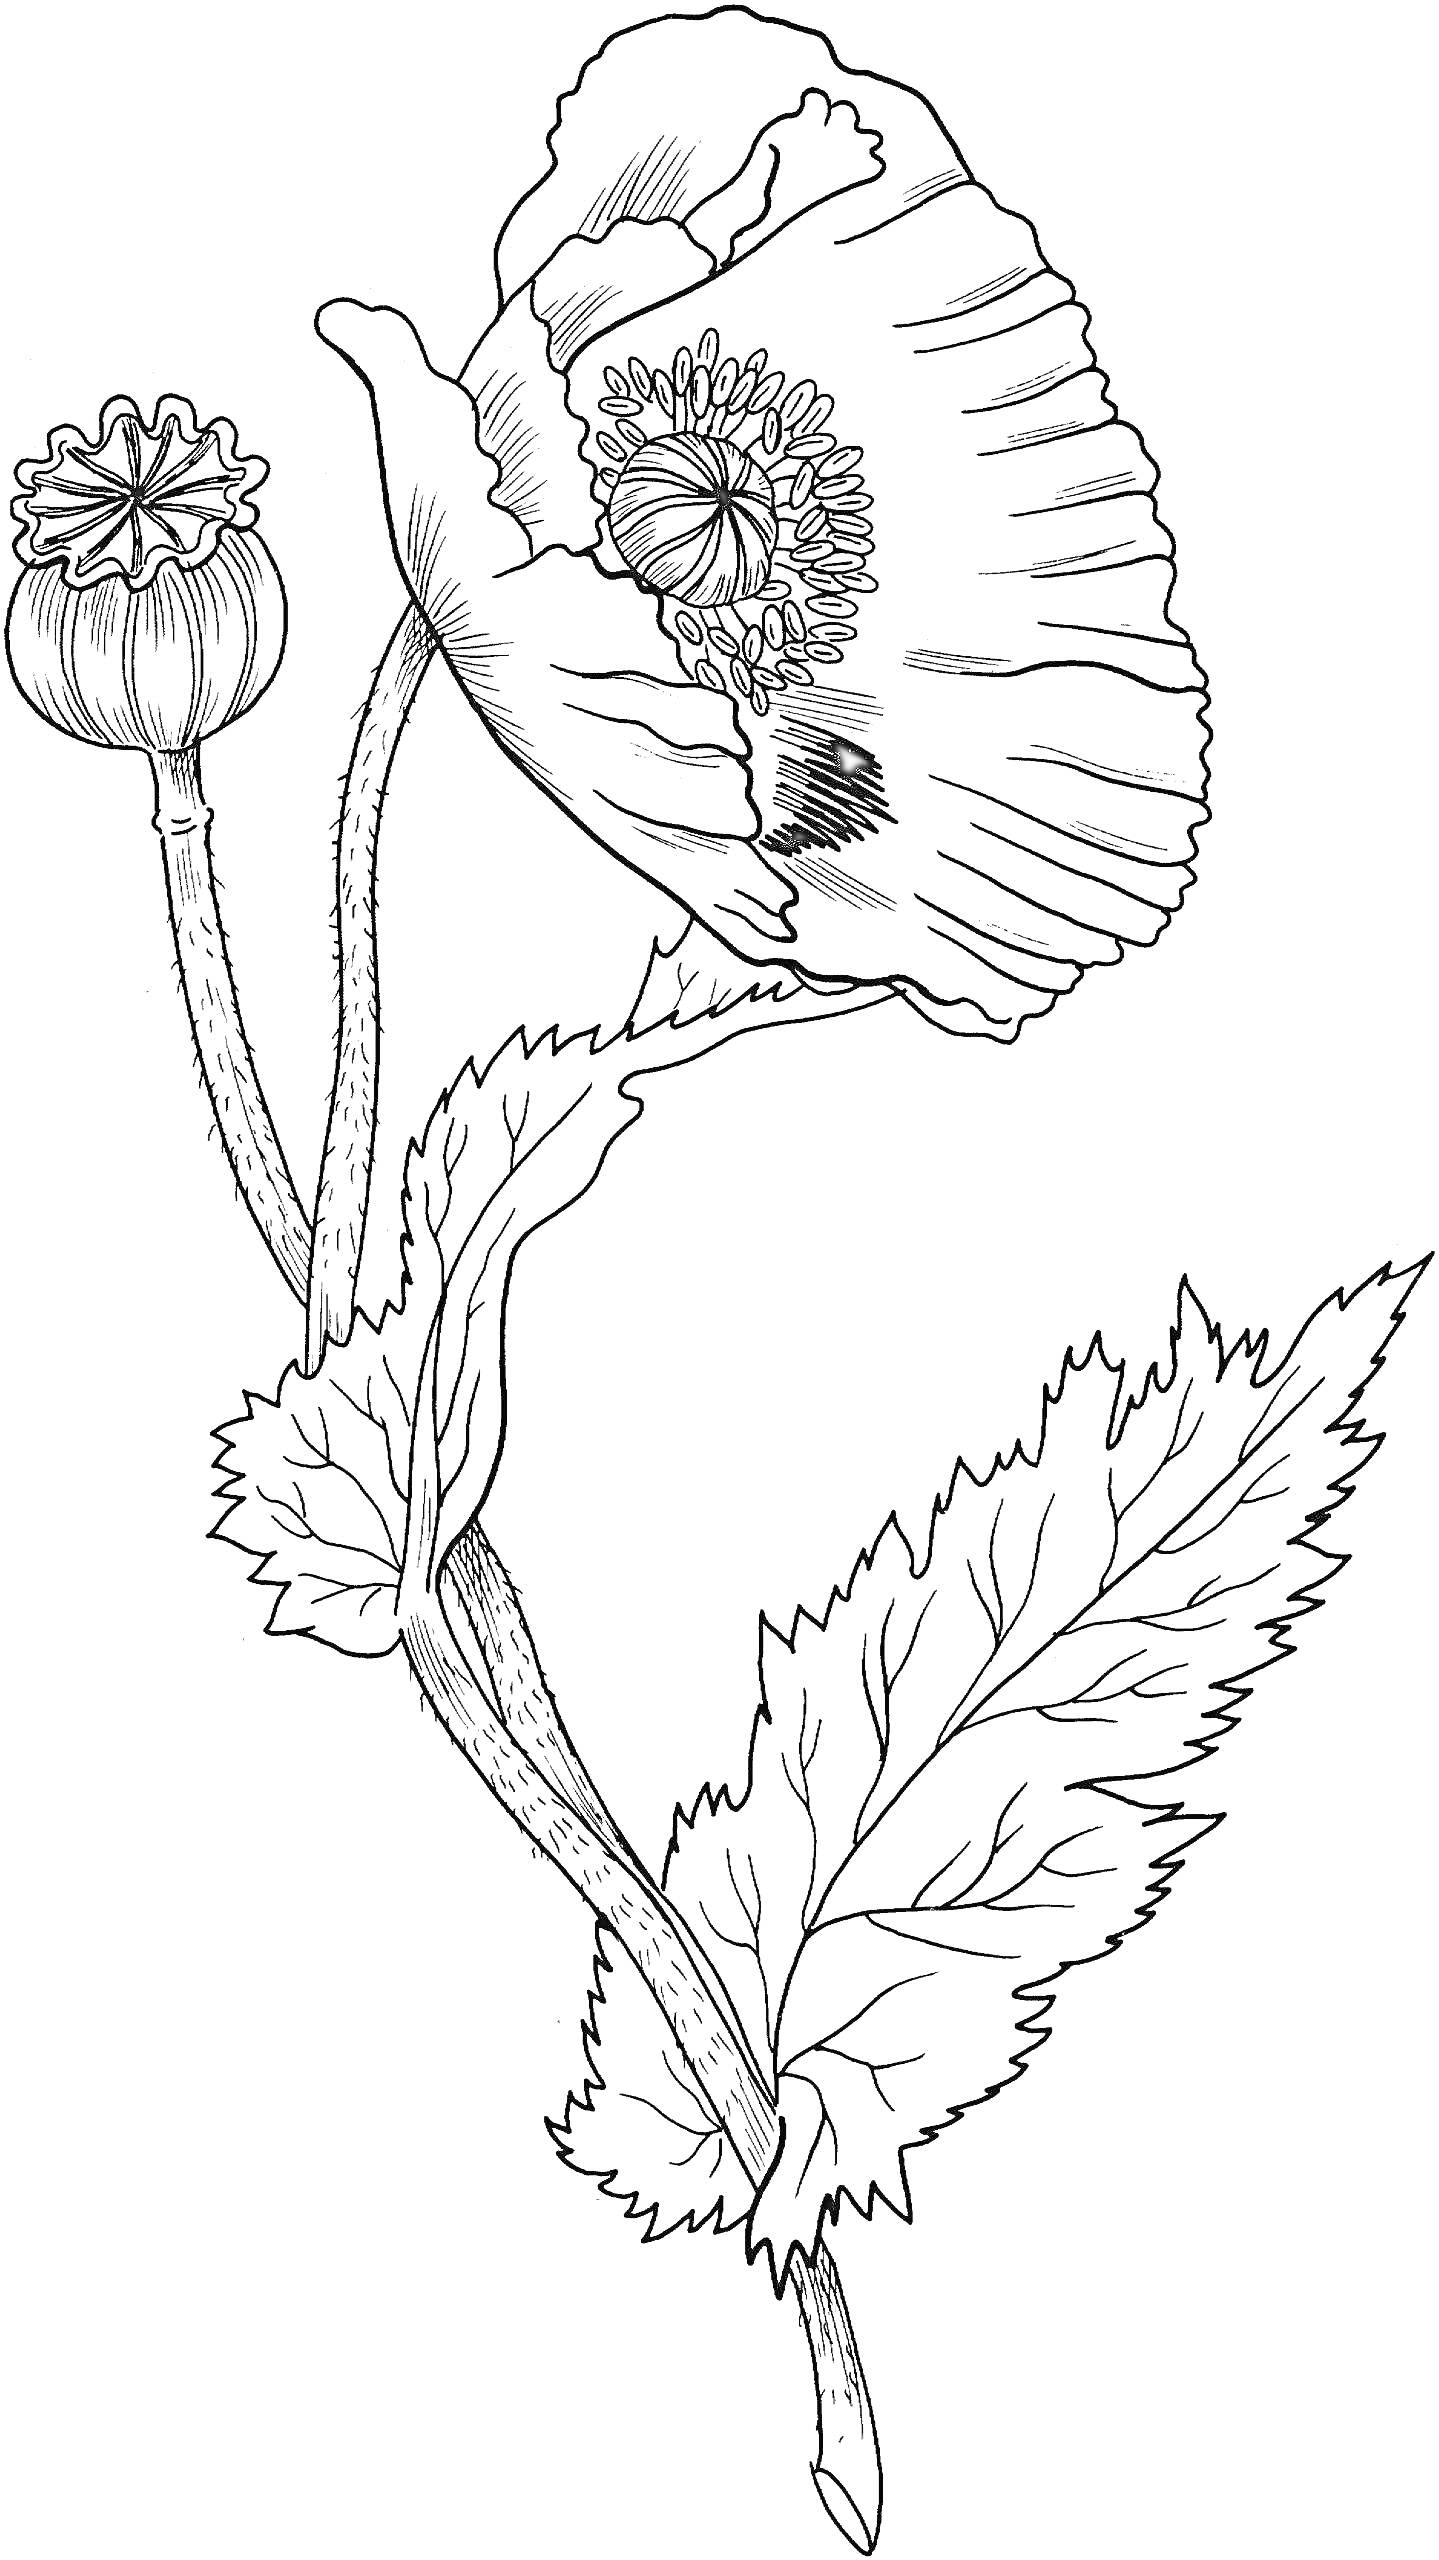 мак с цветком и бутоном, стеблем и листьями